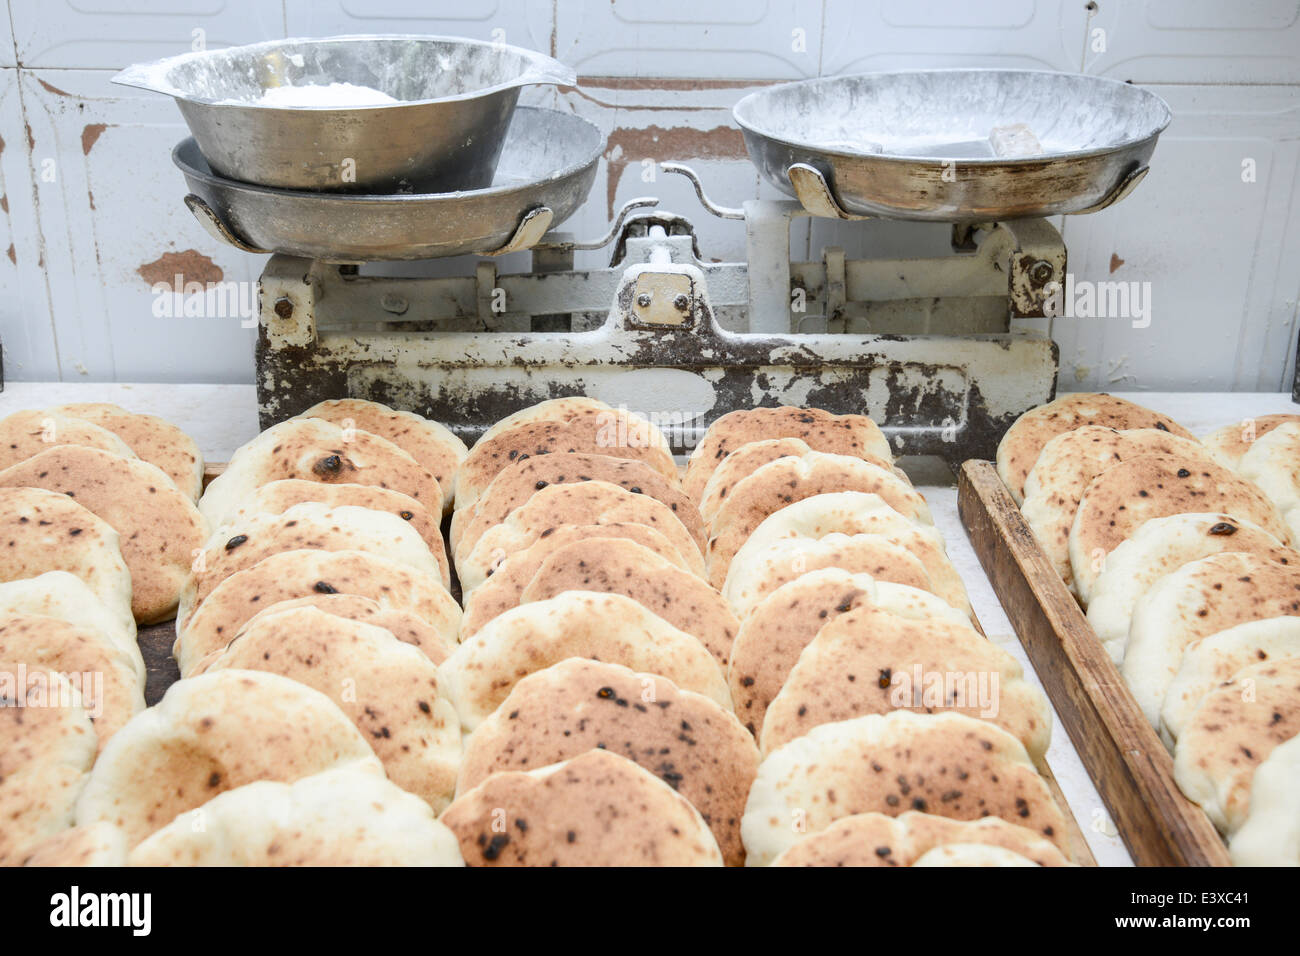 Freshly baked handmade pita bread Stock Photo